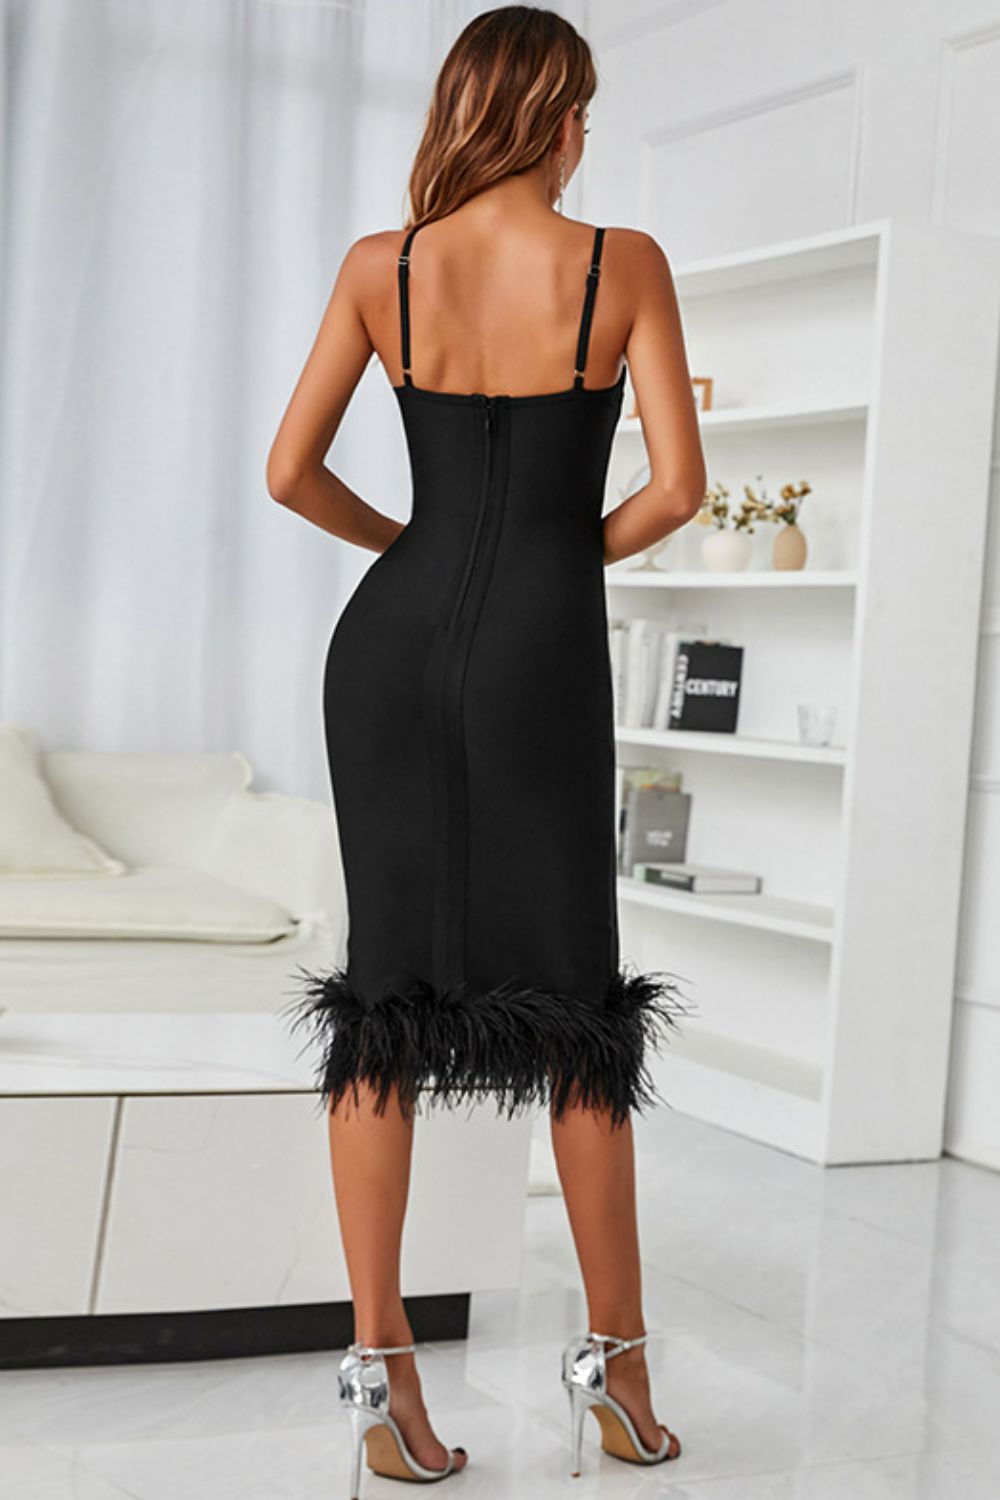 Spaghetti Strap Feather Trim Bodycon Dress | Private Label Styles